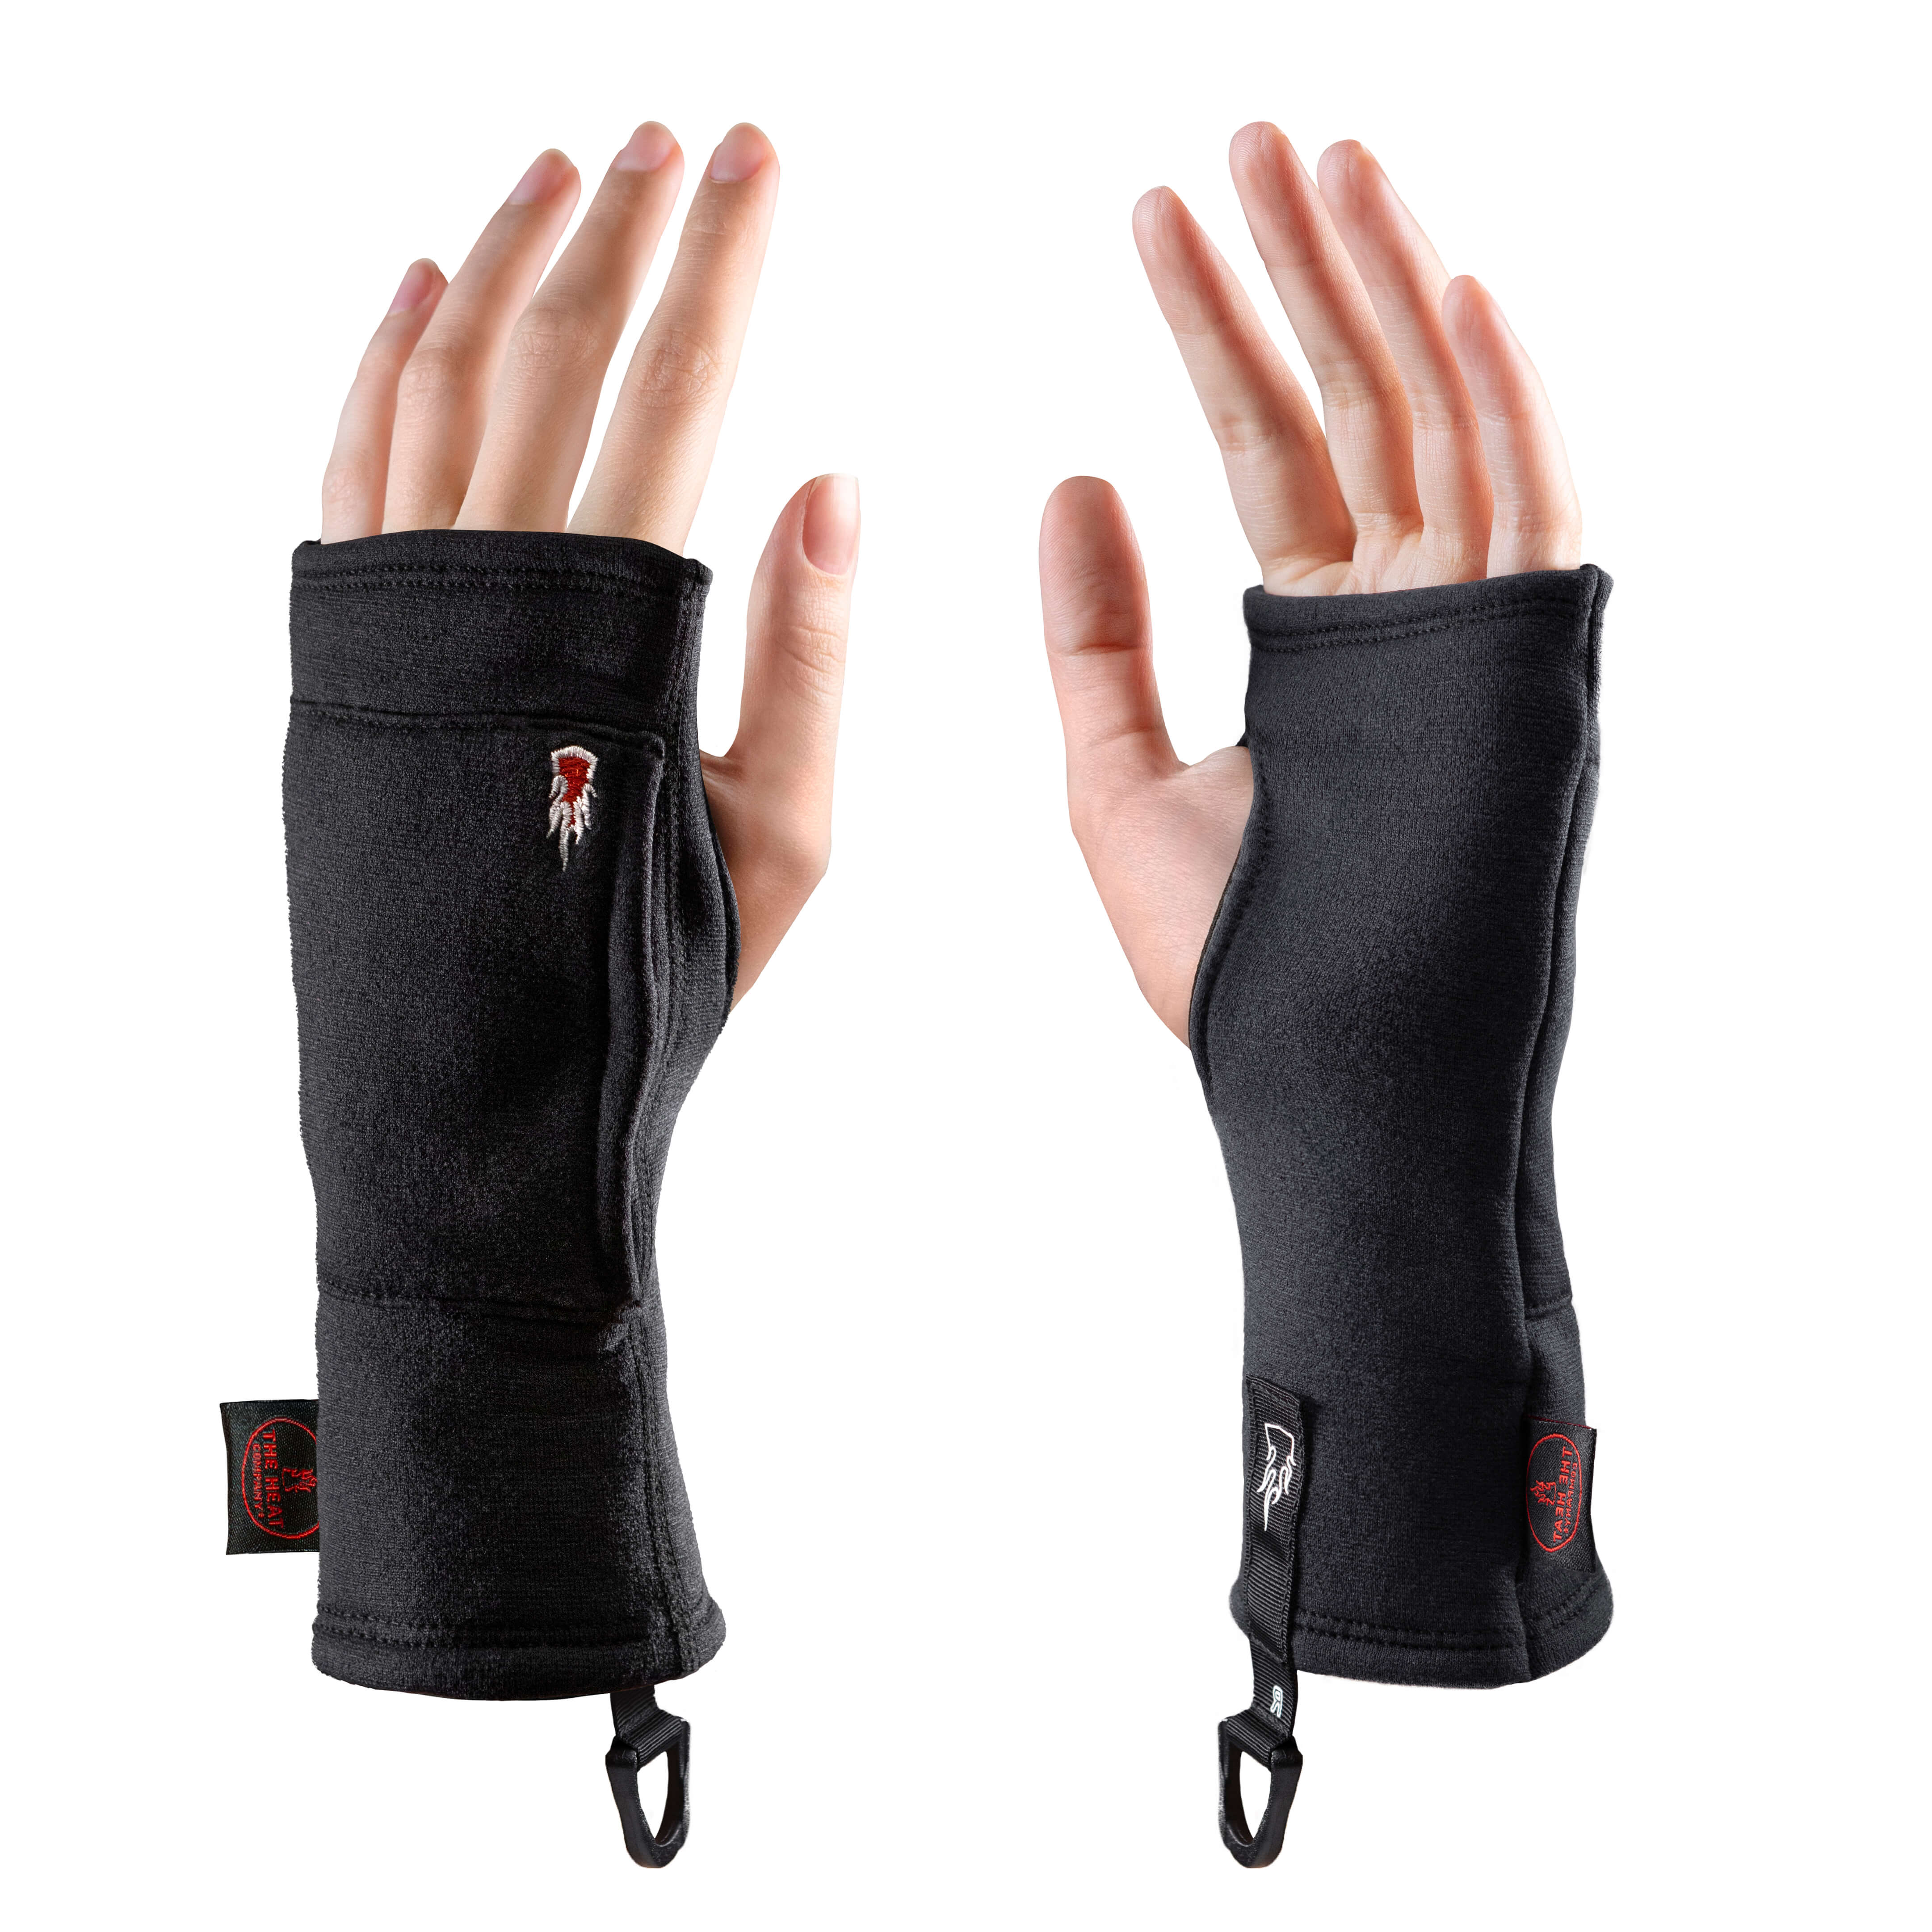  THE HEAT COMPANY: Gloves